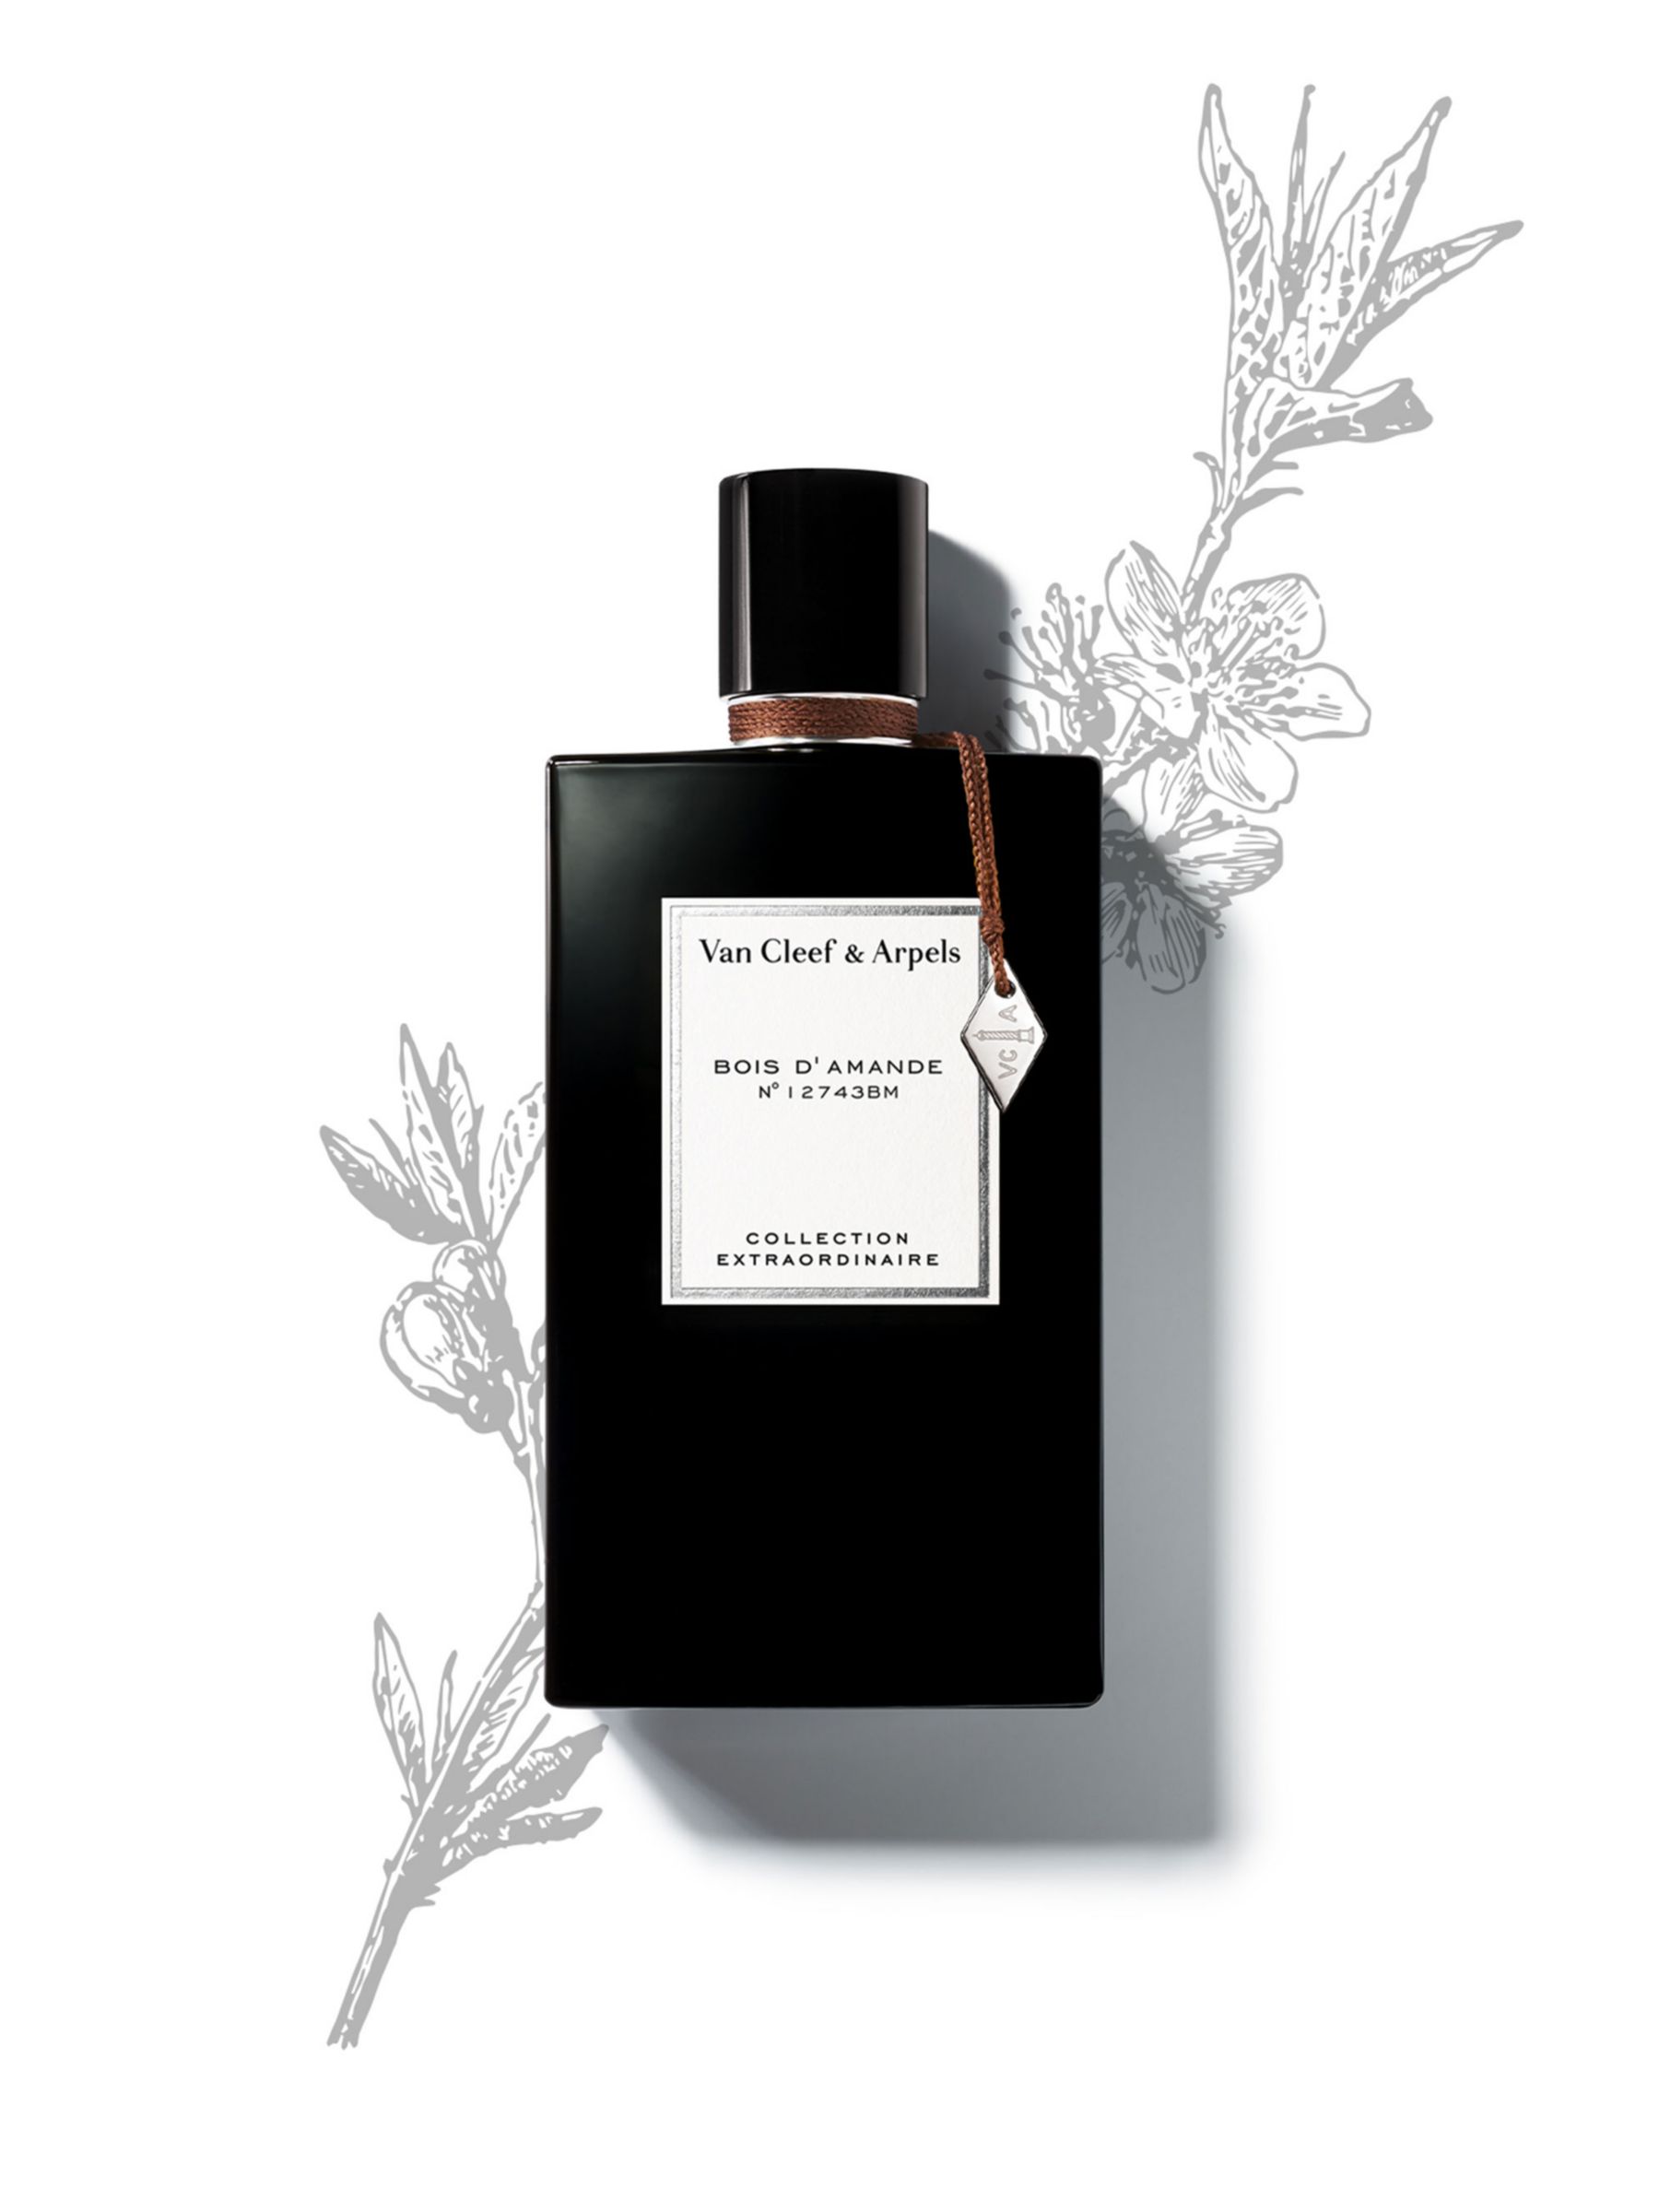 Fragrances - Van Cleef & Arpels - Van Cleef & Arpels